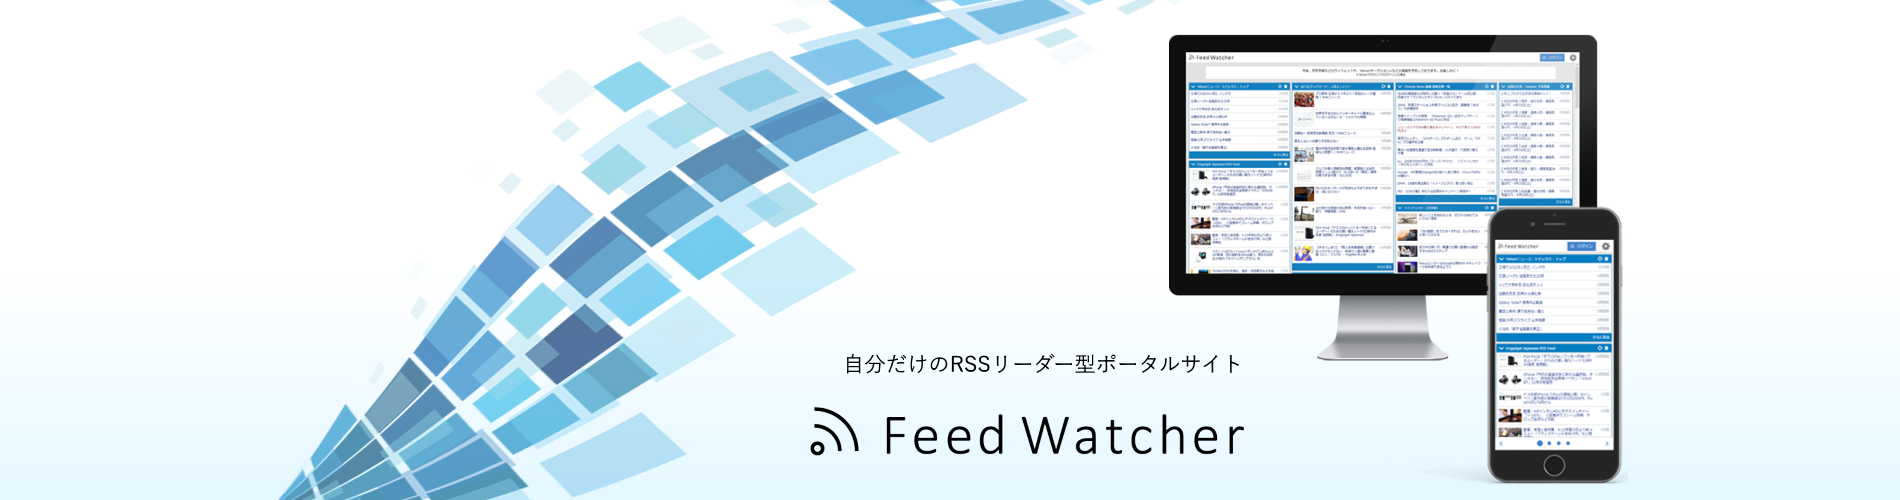 Feed Watcher - 個人ポータルサイト構築サービス